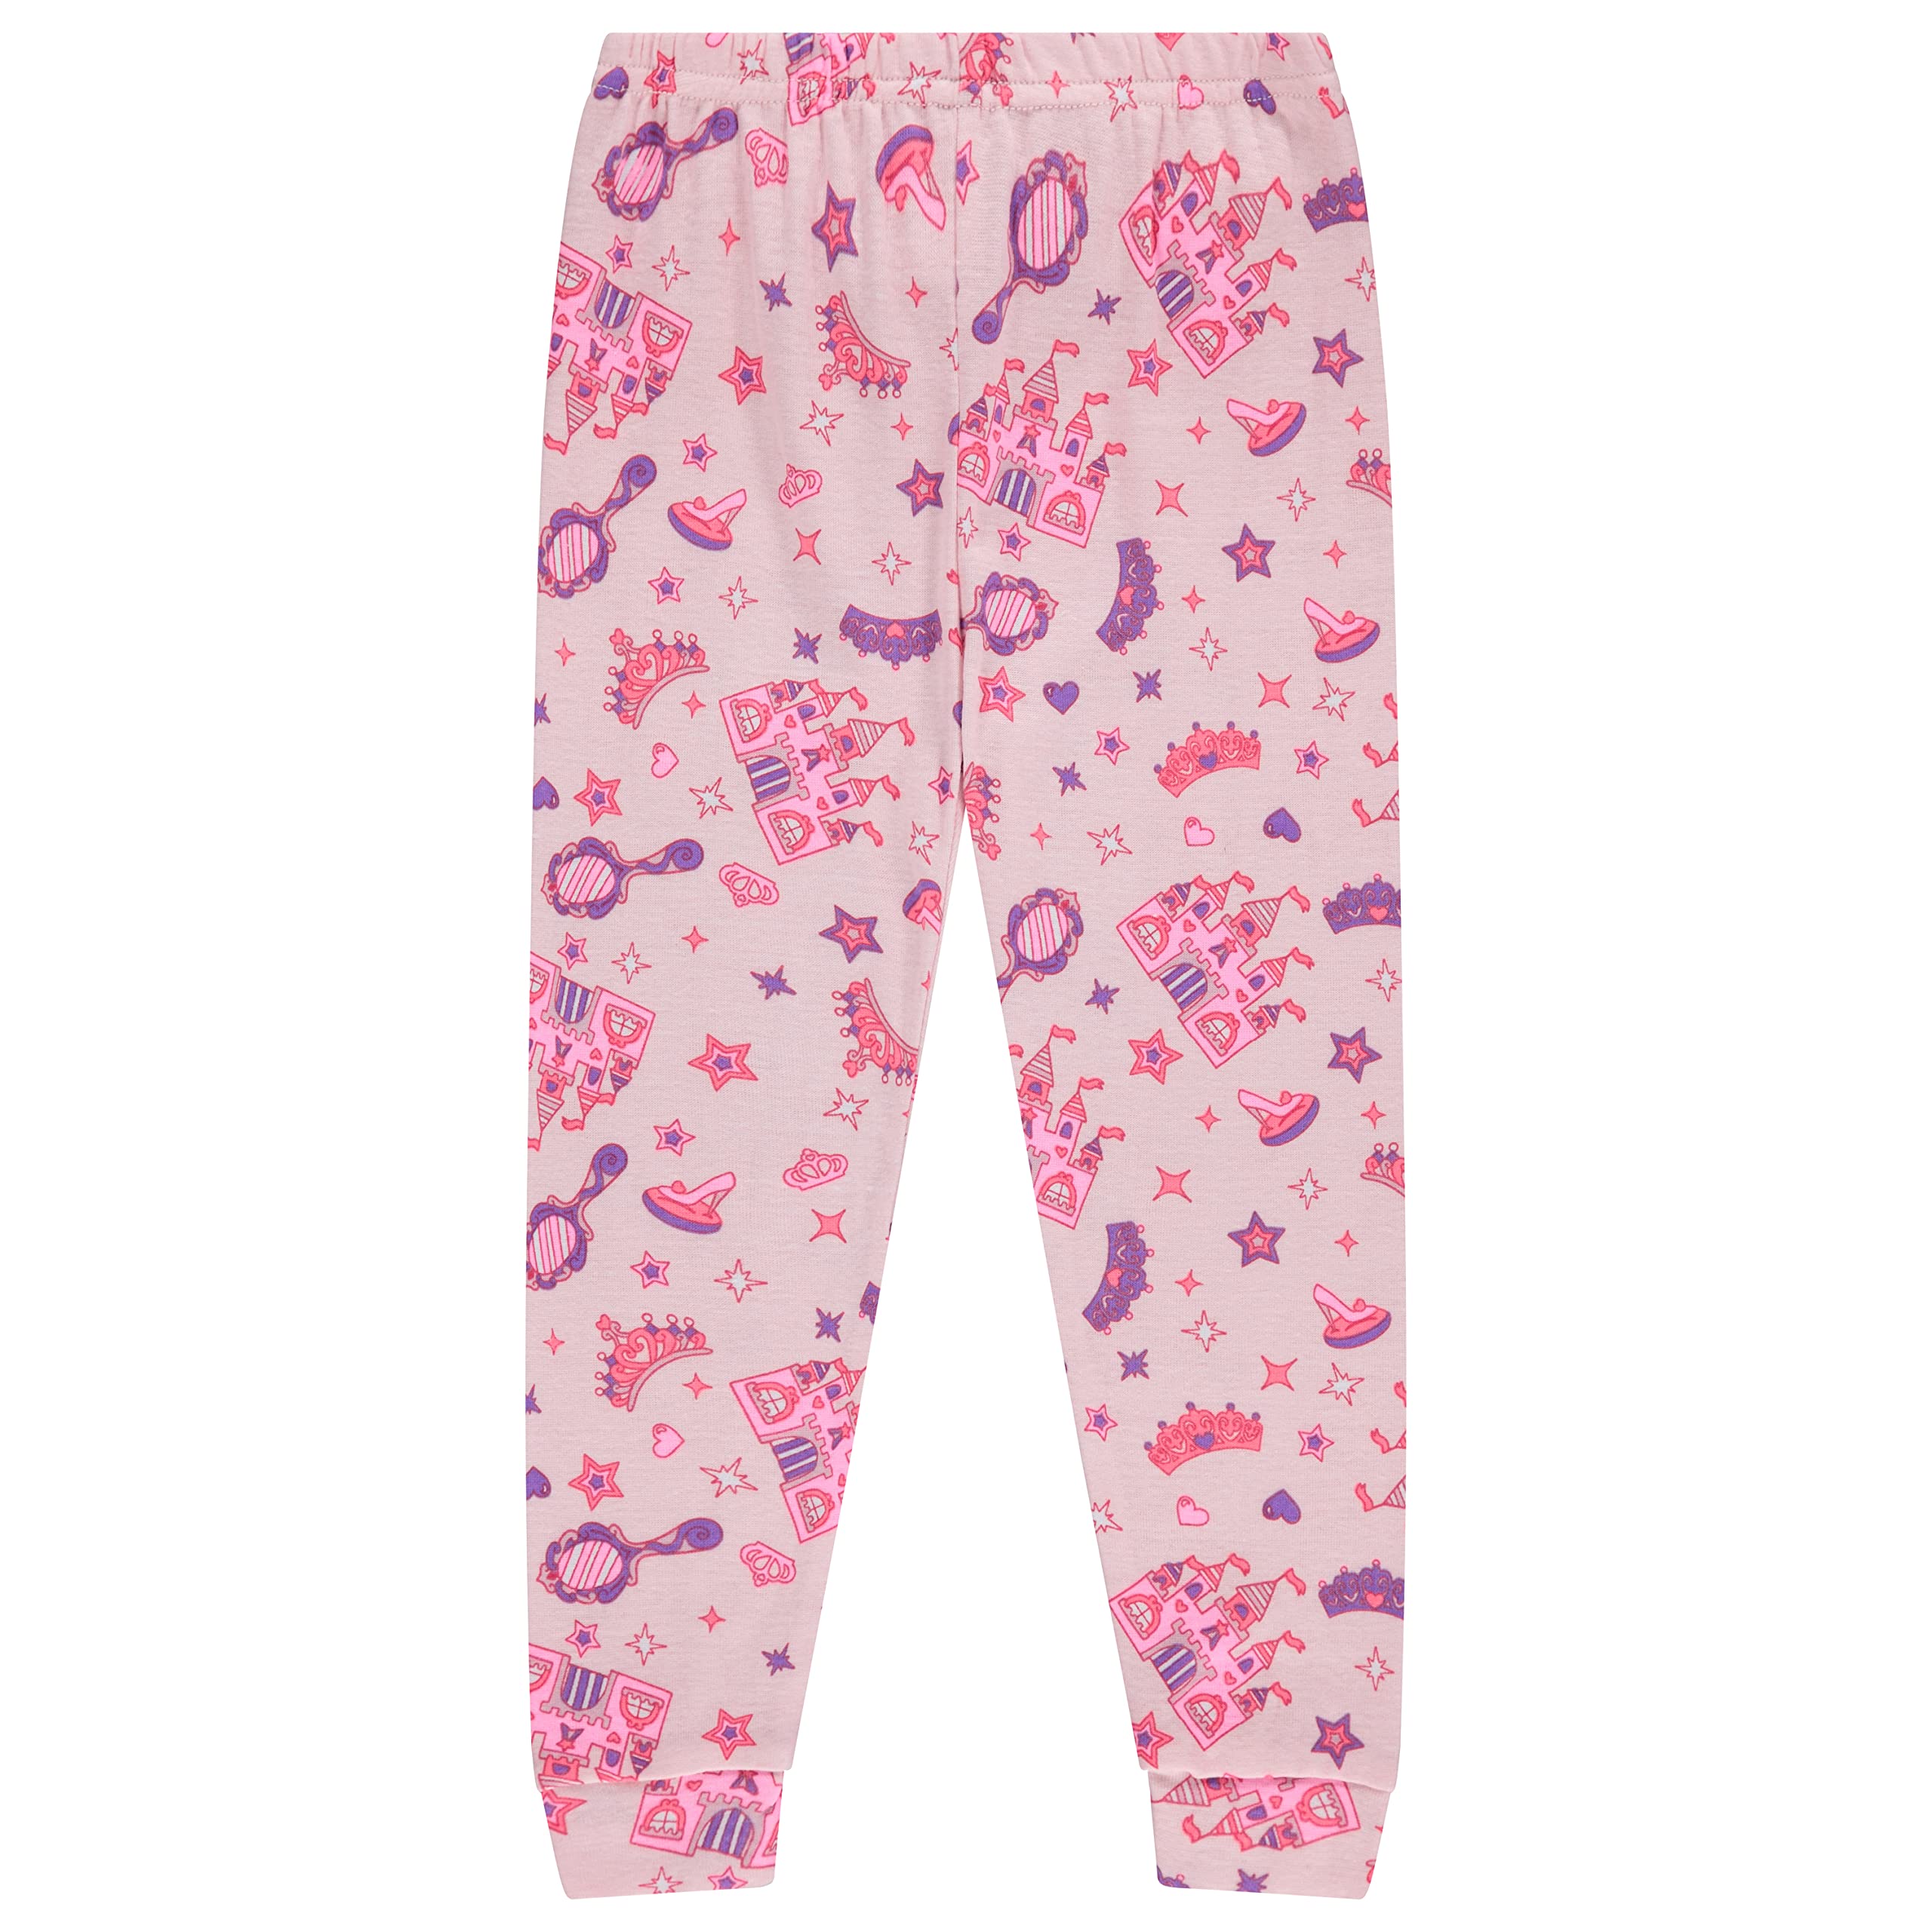 Btween's Toddler Girls 2-Piece Cotton Sleepwear Set: Unicorn, Flower ...